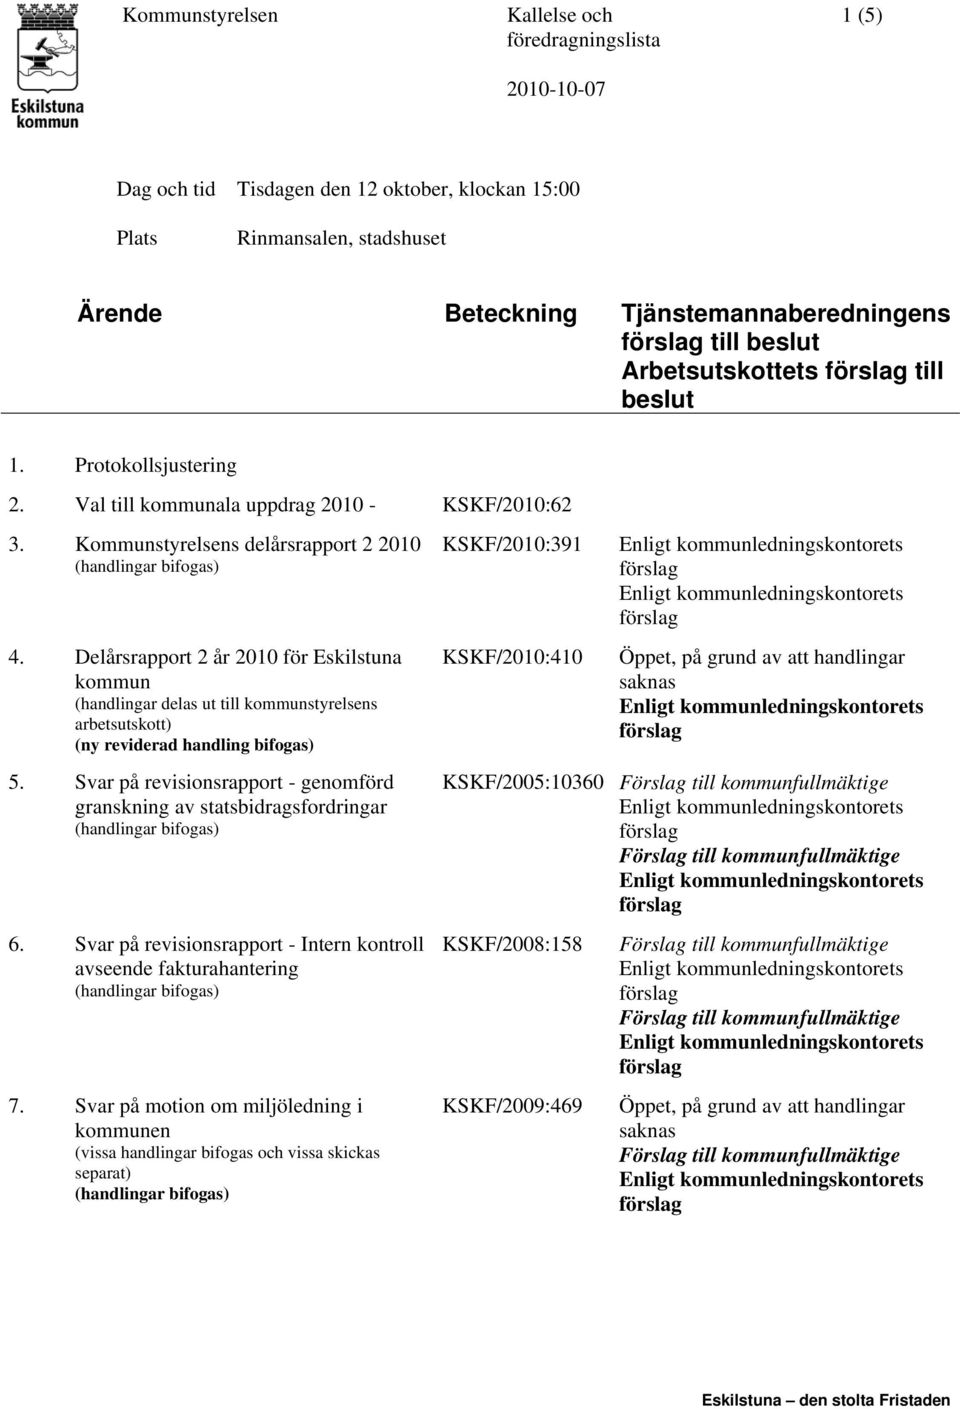 Delårsrapport 2 år 2010 för Eskilstuna kommun (handlingar delas ut till kommunstyrelsens arbetsutskott) 5. Svar på revisionsrapport - genomförd granskning av statsbidragsfordringar 6.